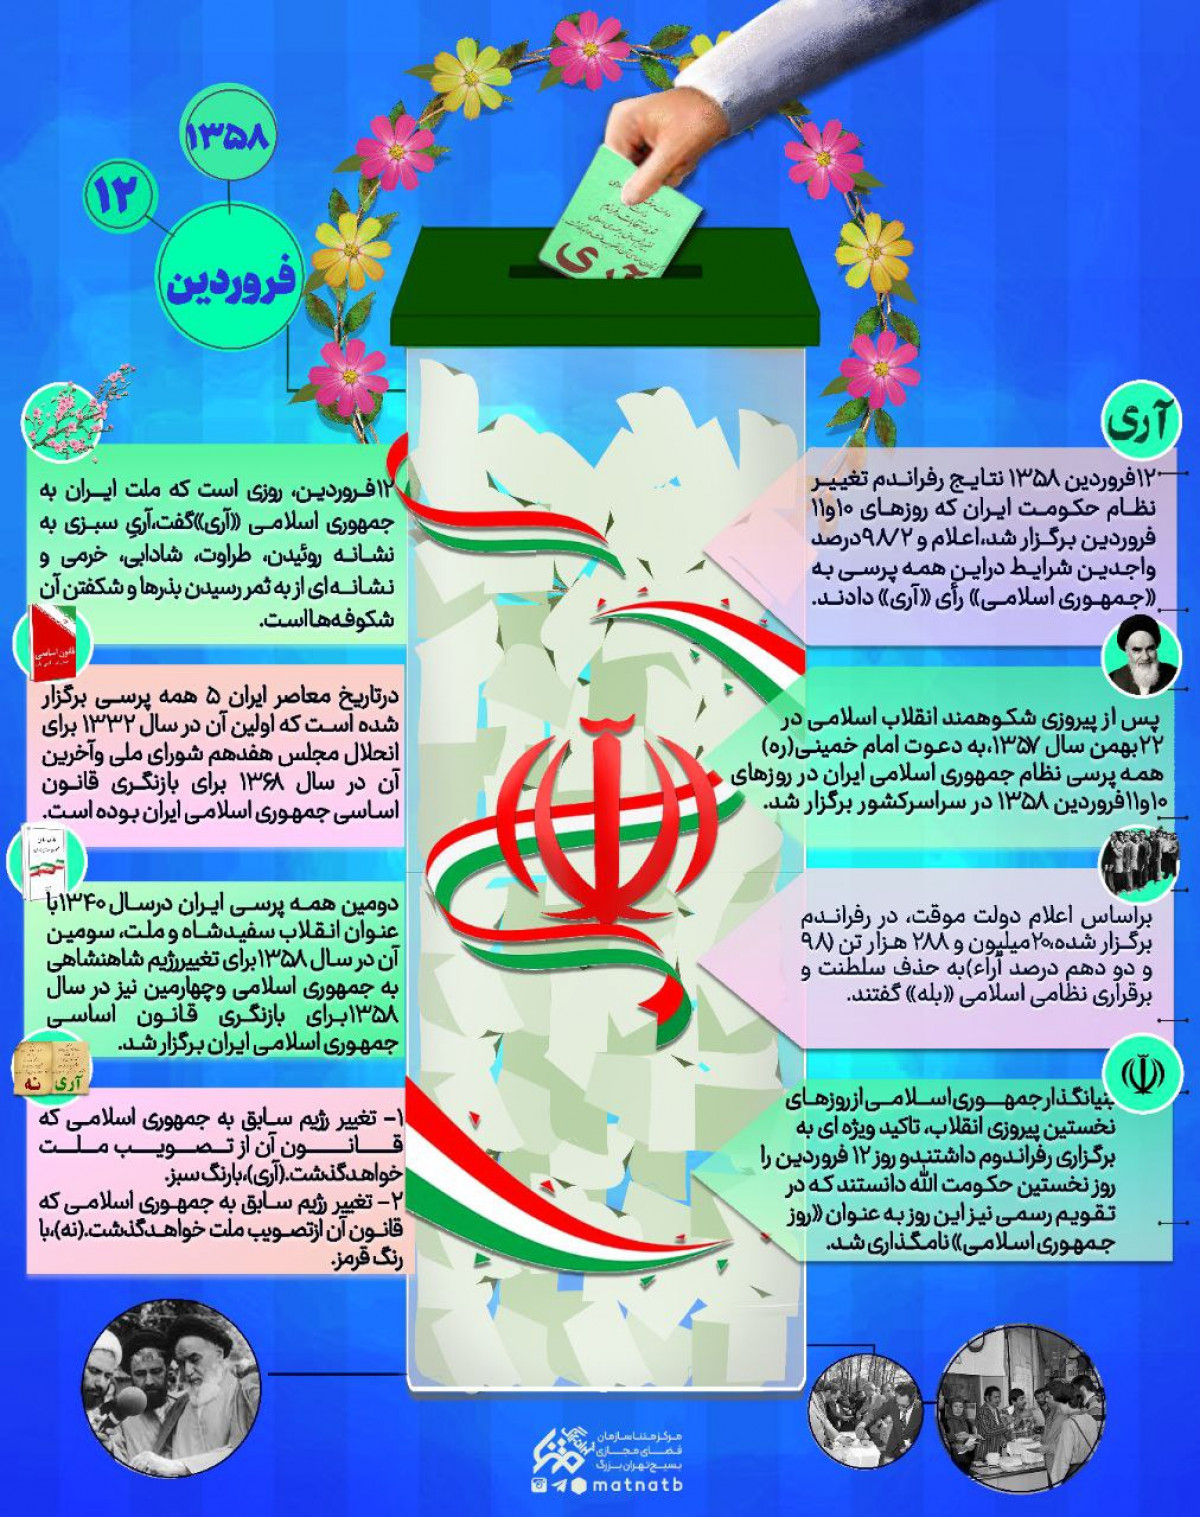 مروری کوتاه بر وقایع ۱۲ فروردین، روزی که ملت ایران به جمهوری اسلامی آری گفت